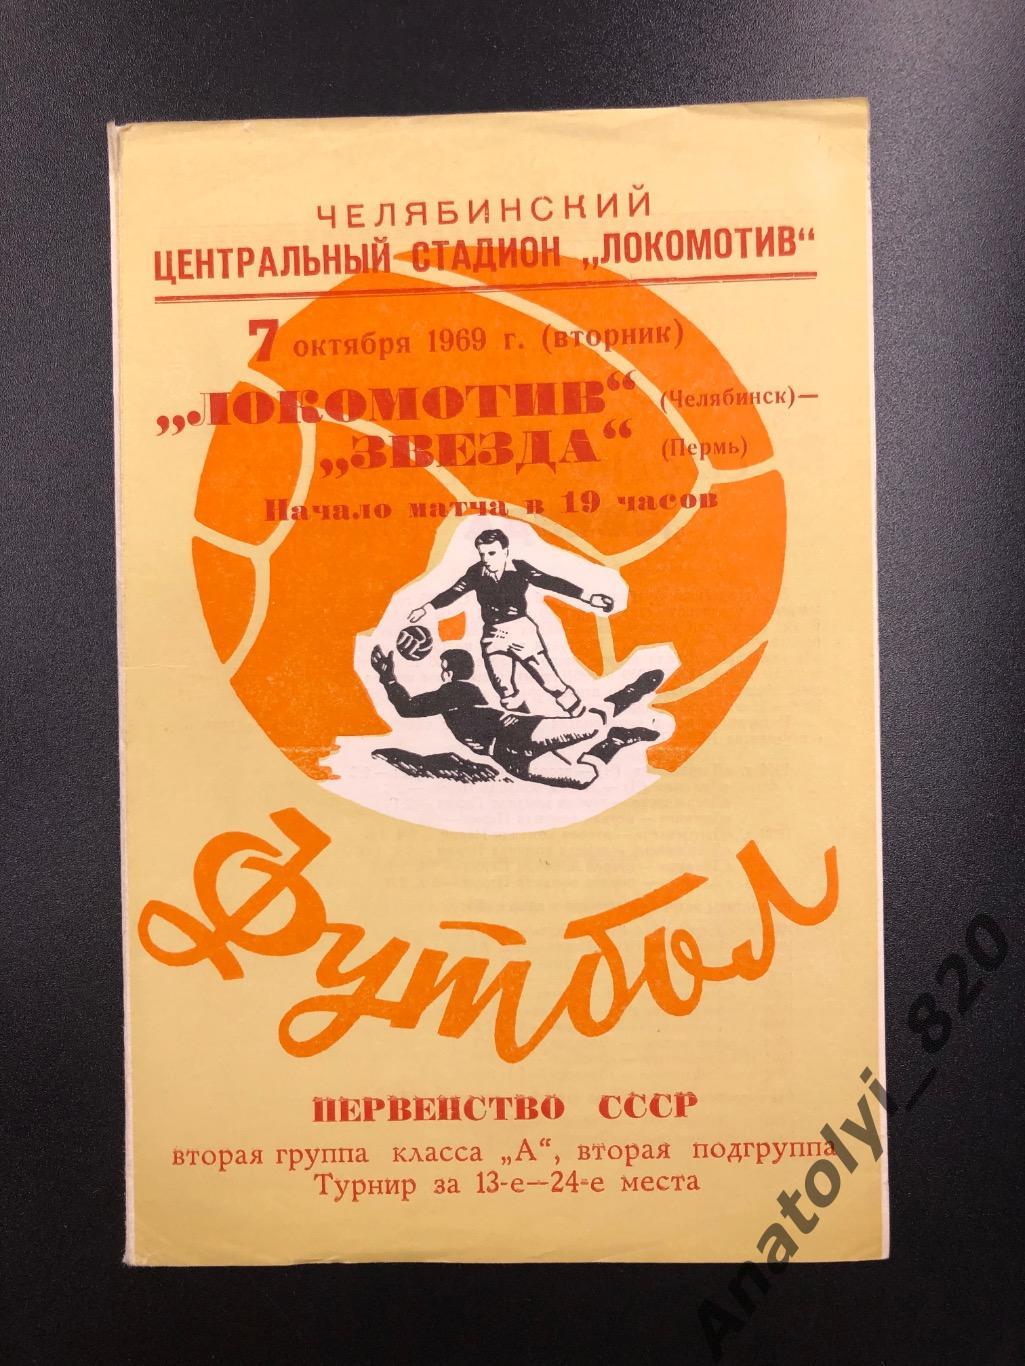 Локомотив Челябинск - Звезда Пермь, 07.10.1969